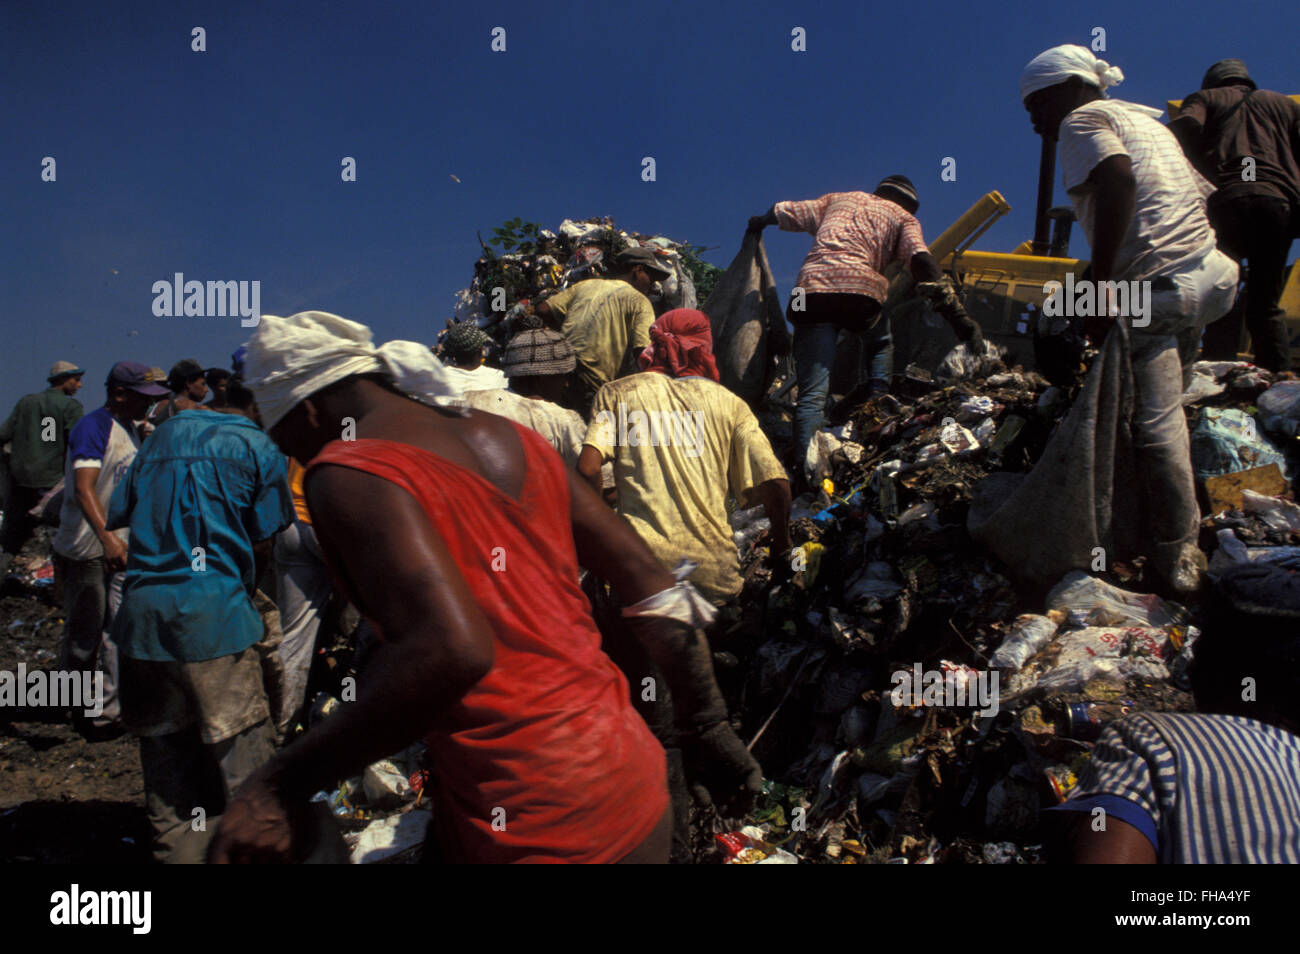 Los recolectores de basura de ordenar a través de encontrar productos reciclables como medio de supervivencia al relleno metropolitano de Jardim Gramacho ( Aterro Metropolitano de Jardim Gramacho ) en la ciudad de Duque de Caxias, uno de los mayores vertederos del mundo, cerró en junio de 2012 después de 34 años de funcionamiento cuando recibió la mayor parte de la basura producida en la ciudad de Río de Janeiro - fue iniciado en un humedal ecológicamente sensibles en el decenio de 1970, adyacente a la bahía de Guanabara. Foto de stock